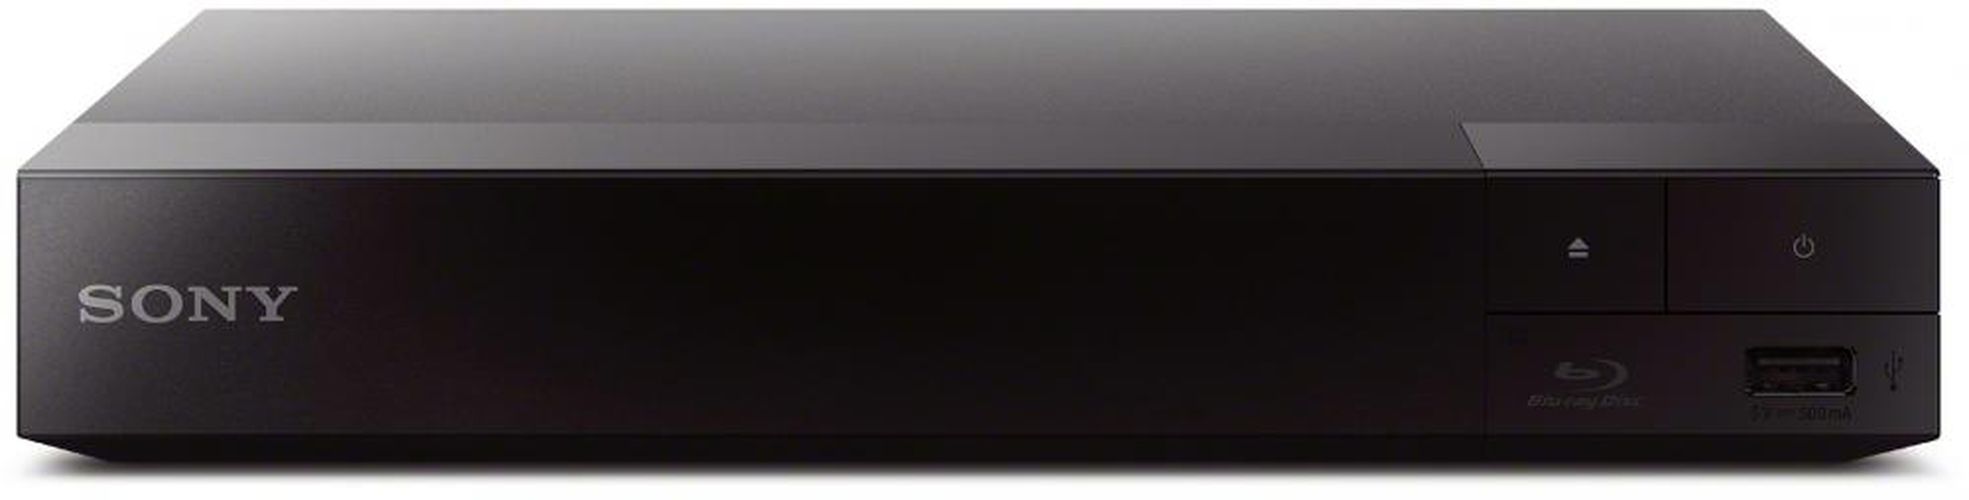 Blu-ray-pleer Sony BDP-S1500, купить недорого